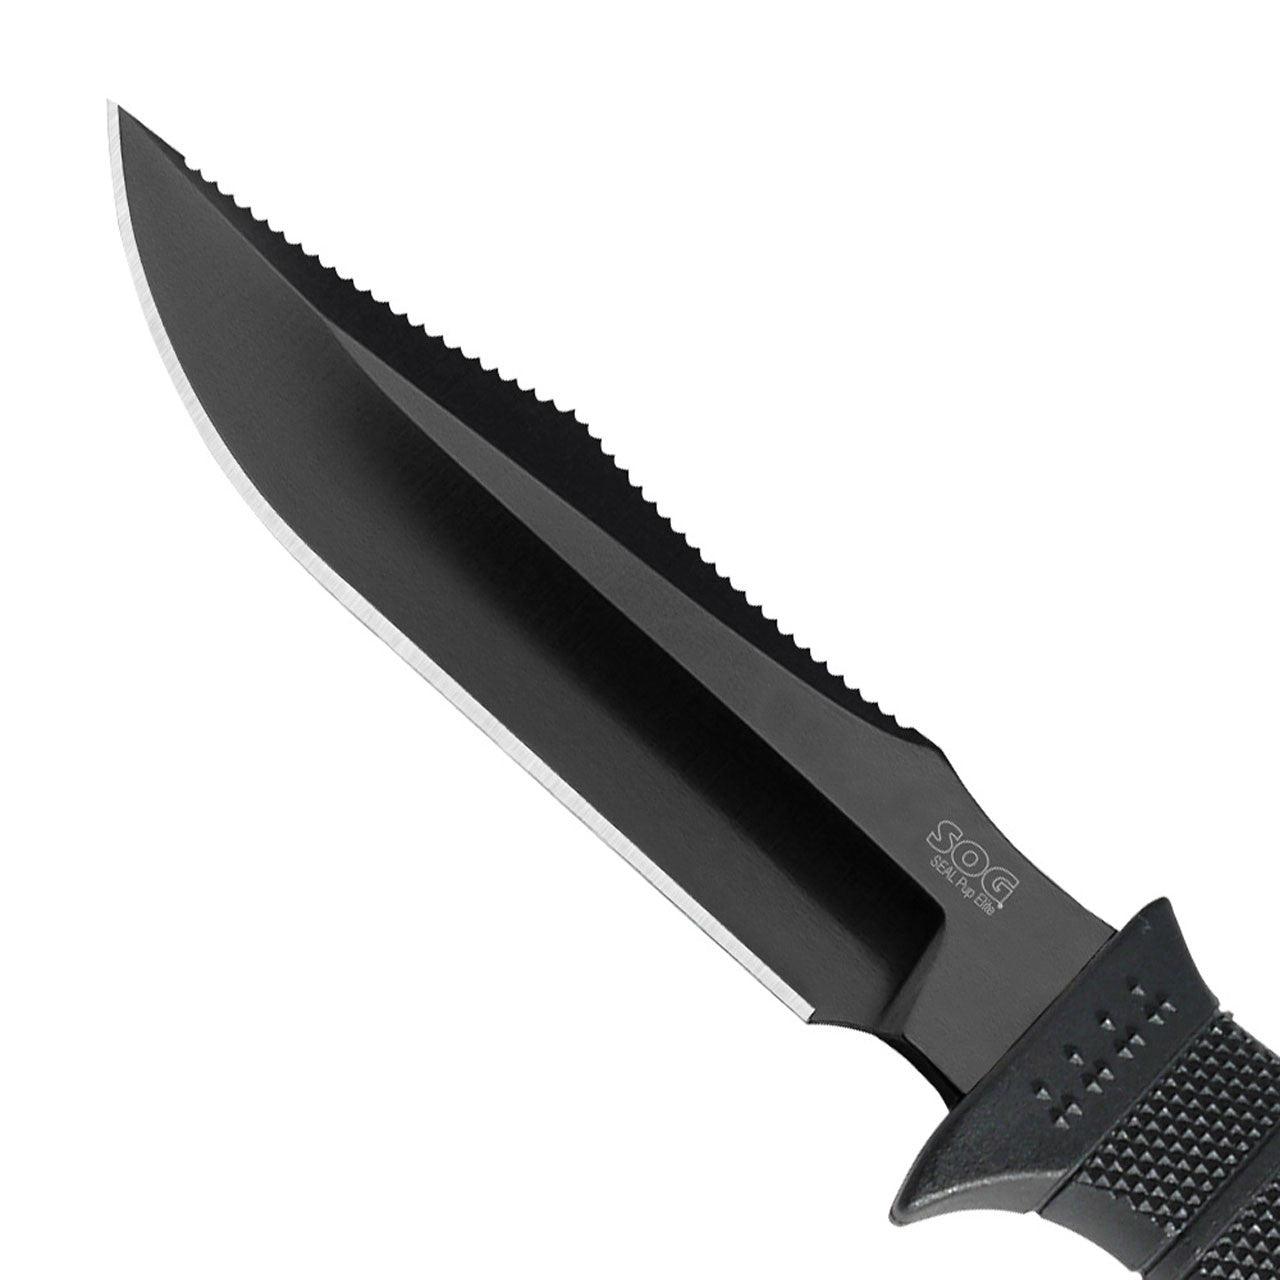 SOG Seal Pup Elite Spine Rasp Black GRN TiNi Coated Plain AUS-8 (Nylon Sheath) - Knives.mx